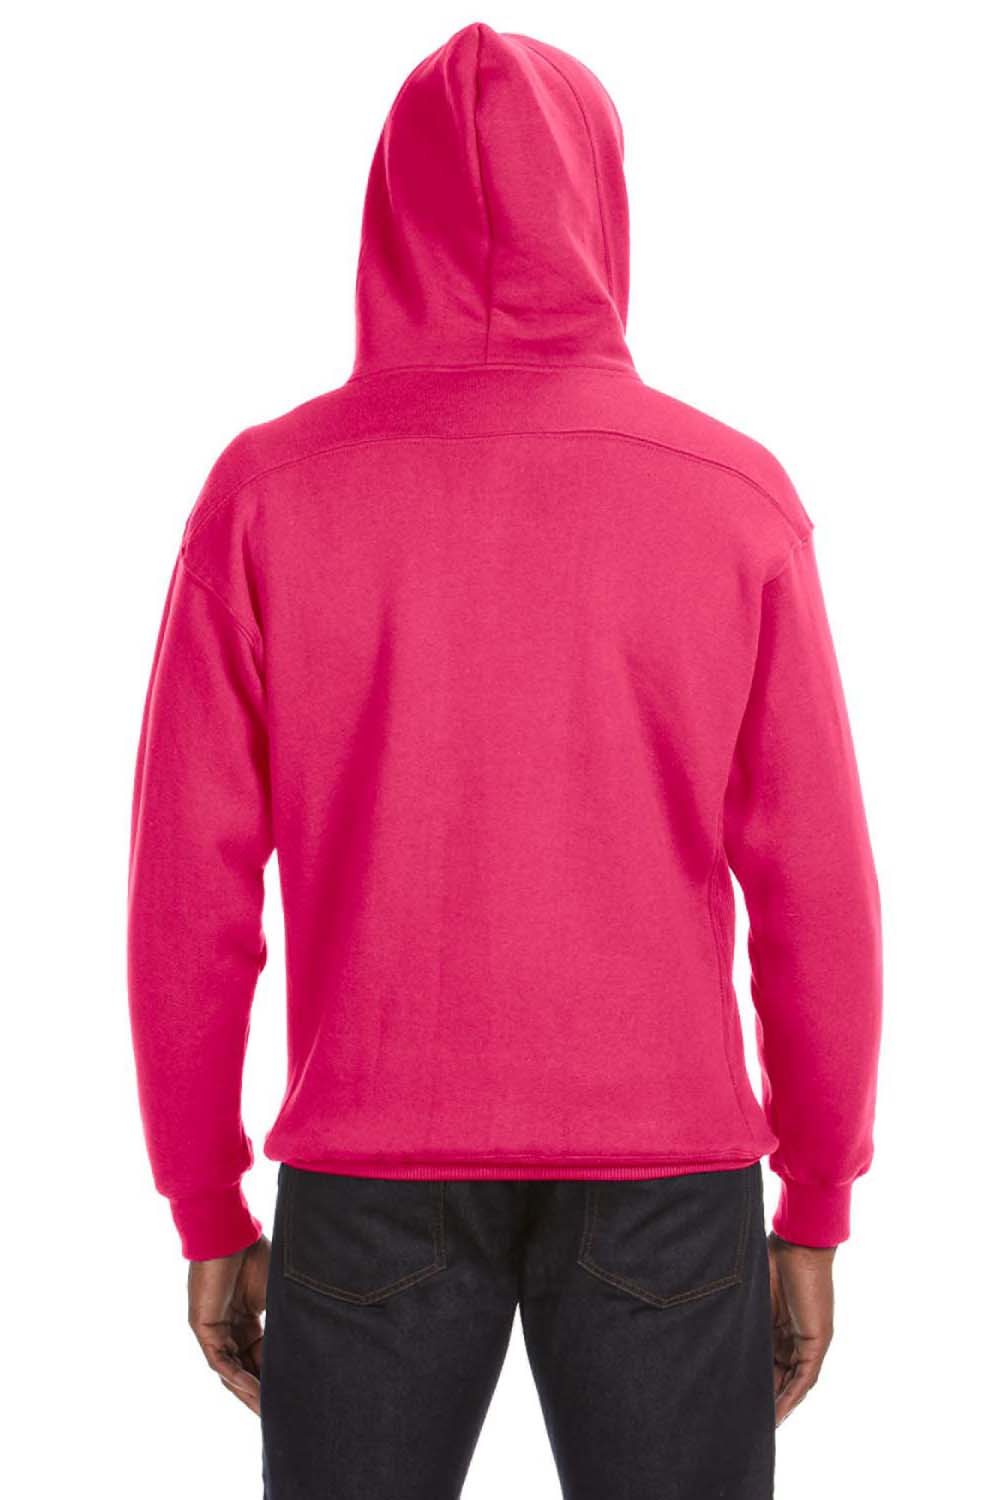 J America JA8830 Mens Sport Lace Hooded Sweatshirt Hoodie Wildberry Pink Back